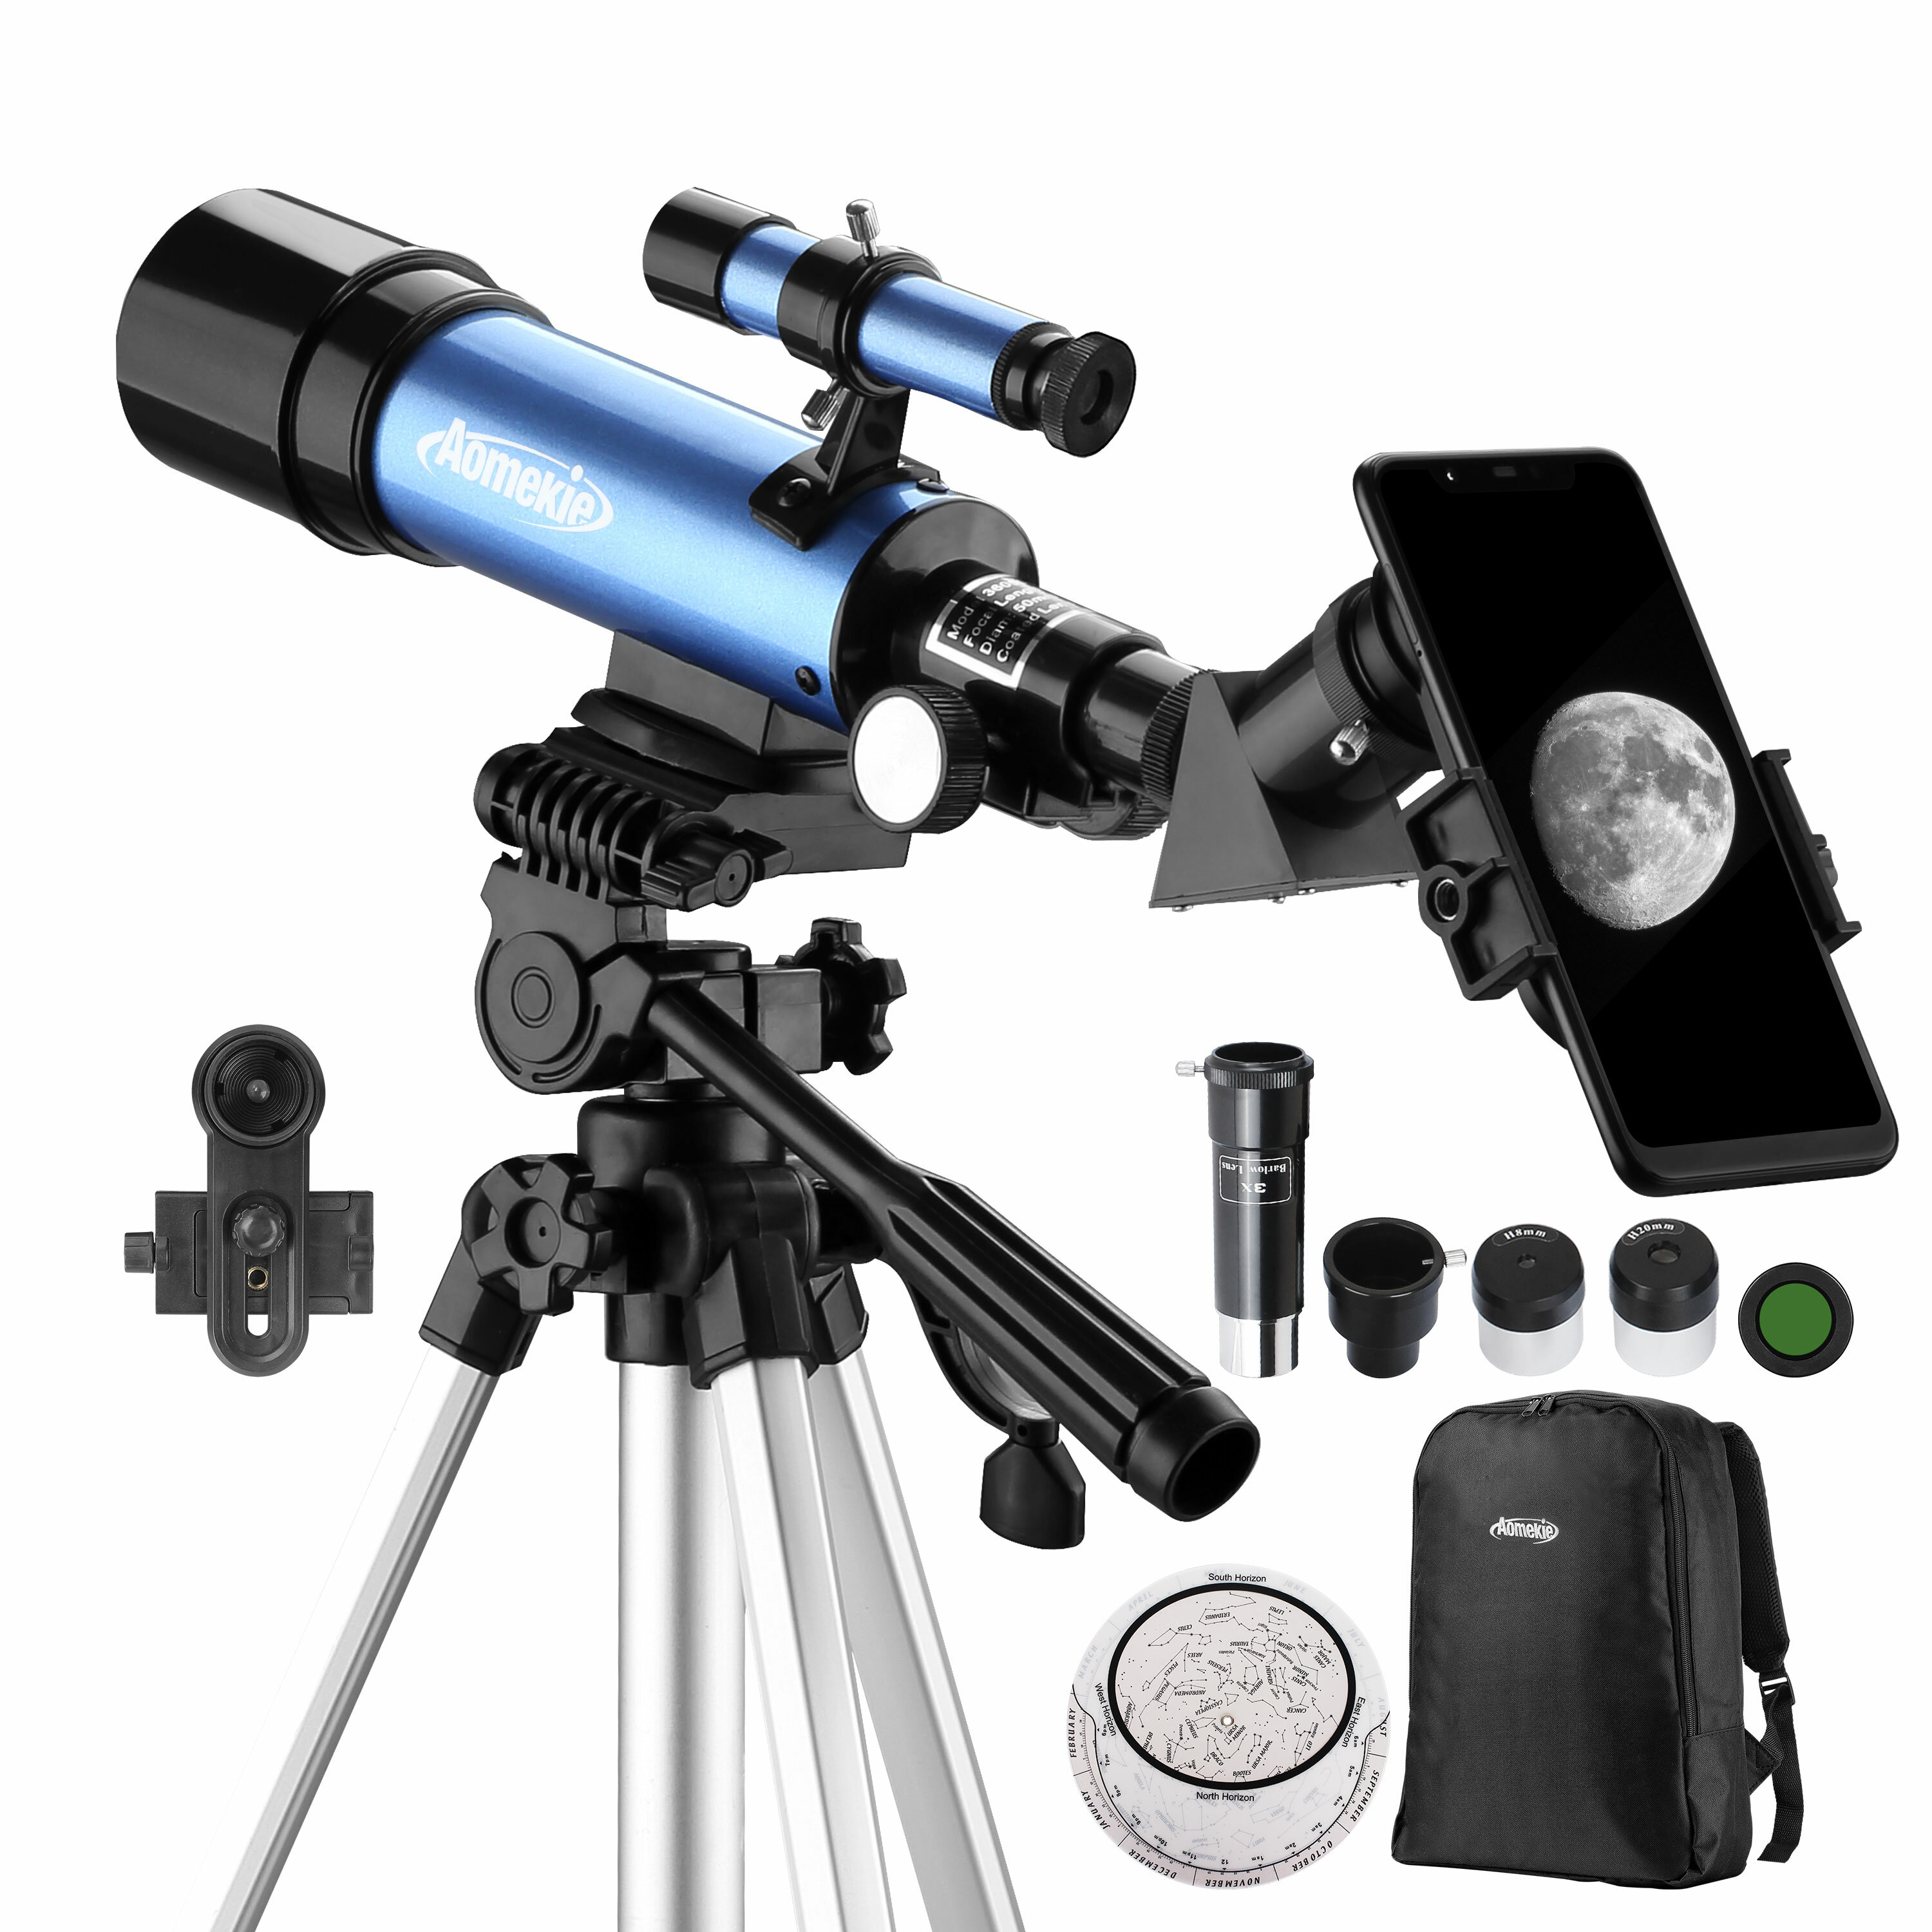 AOMEKIE 18X-135X Астрономический телескоп с диаметром объектива 50 мм, рефракторный тип, с адаптером для телефона и регулируемым штативом для начинающих астрономов.